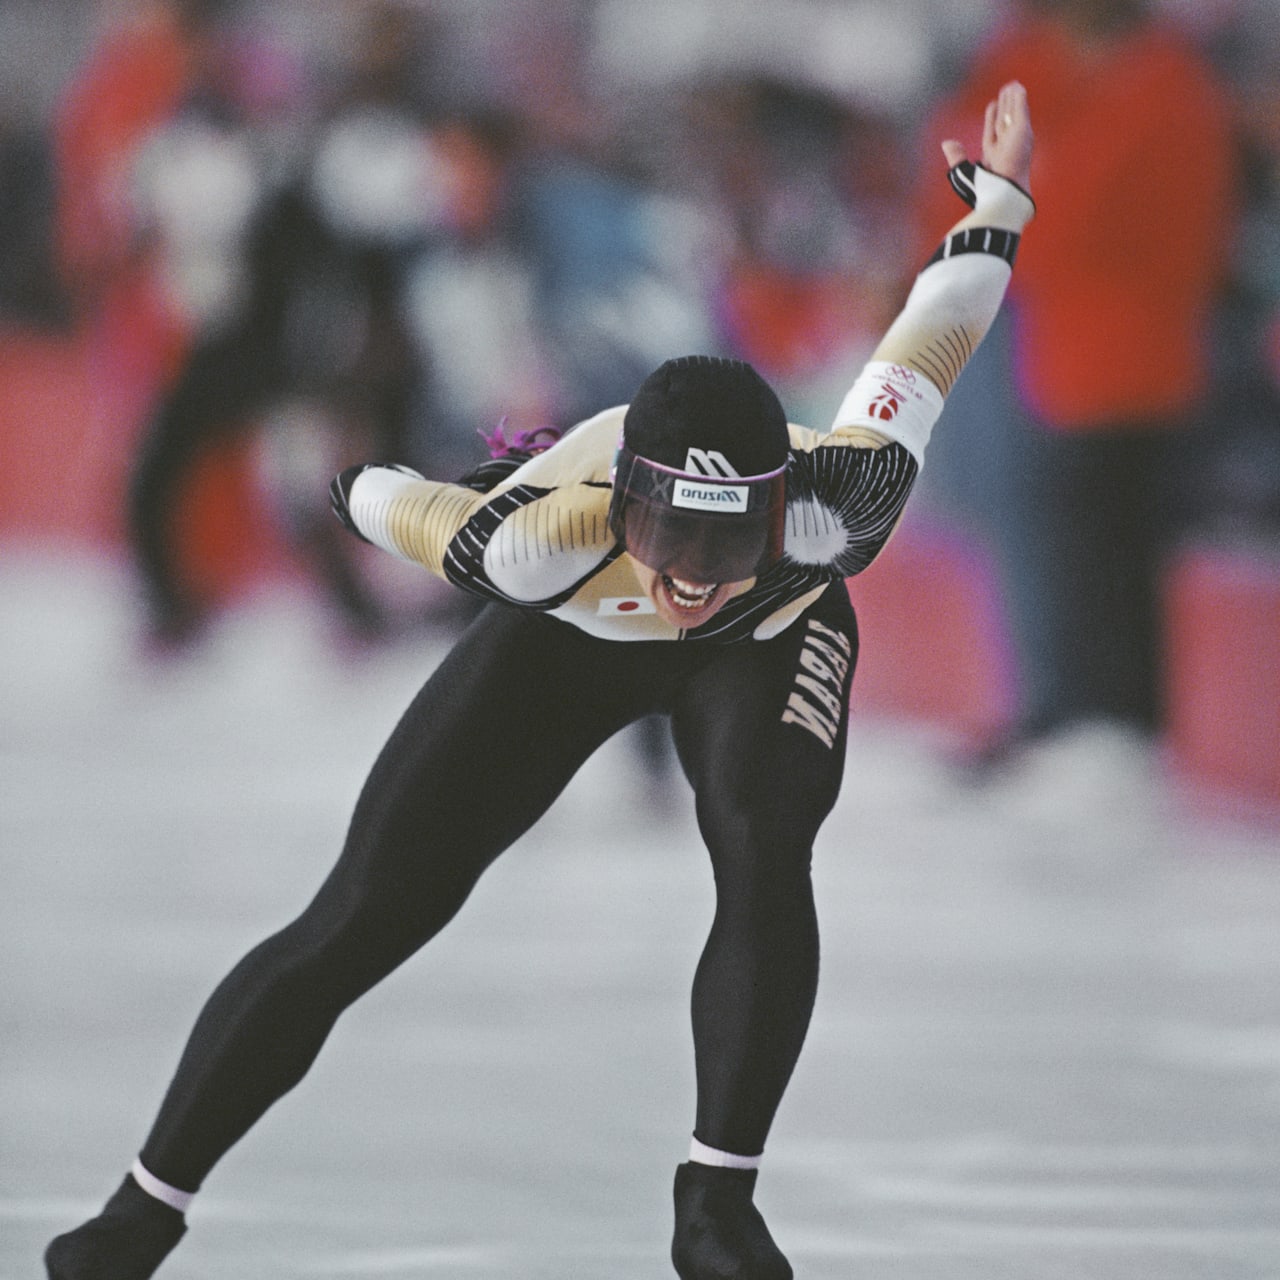 第16回冬季オリンピック アルベール大会 スピードスケート 出場記念 秋田銅器